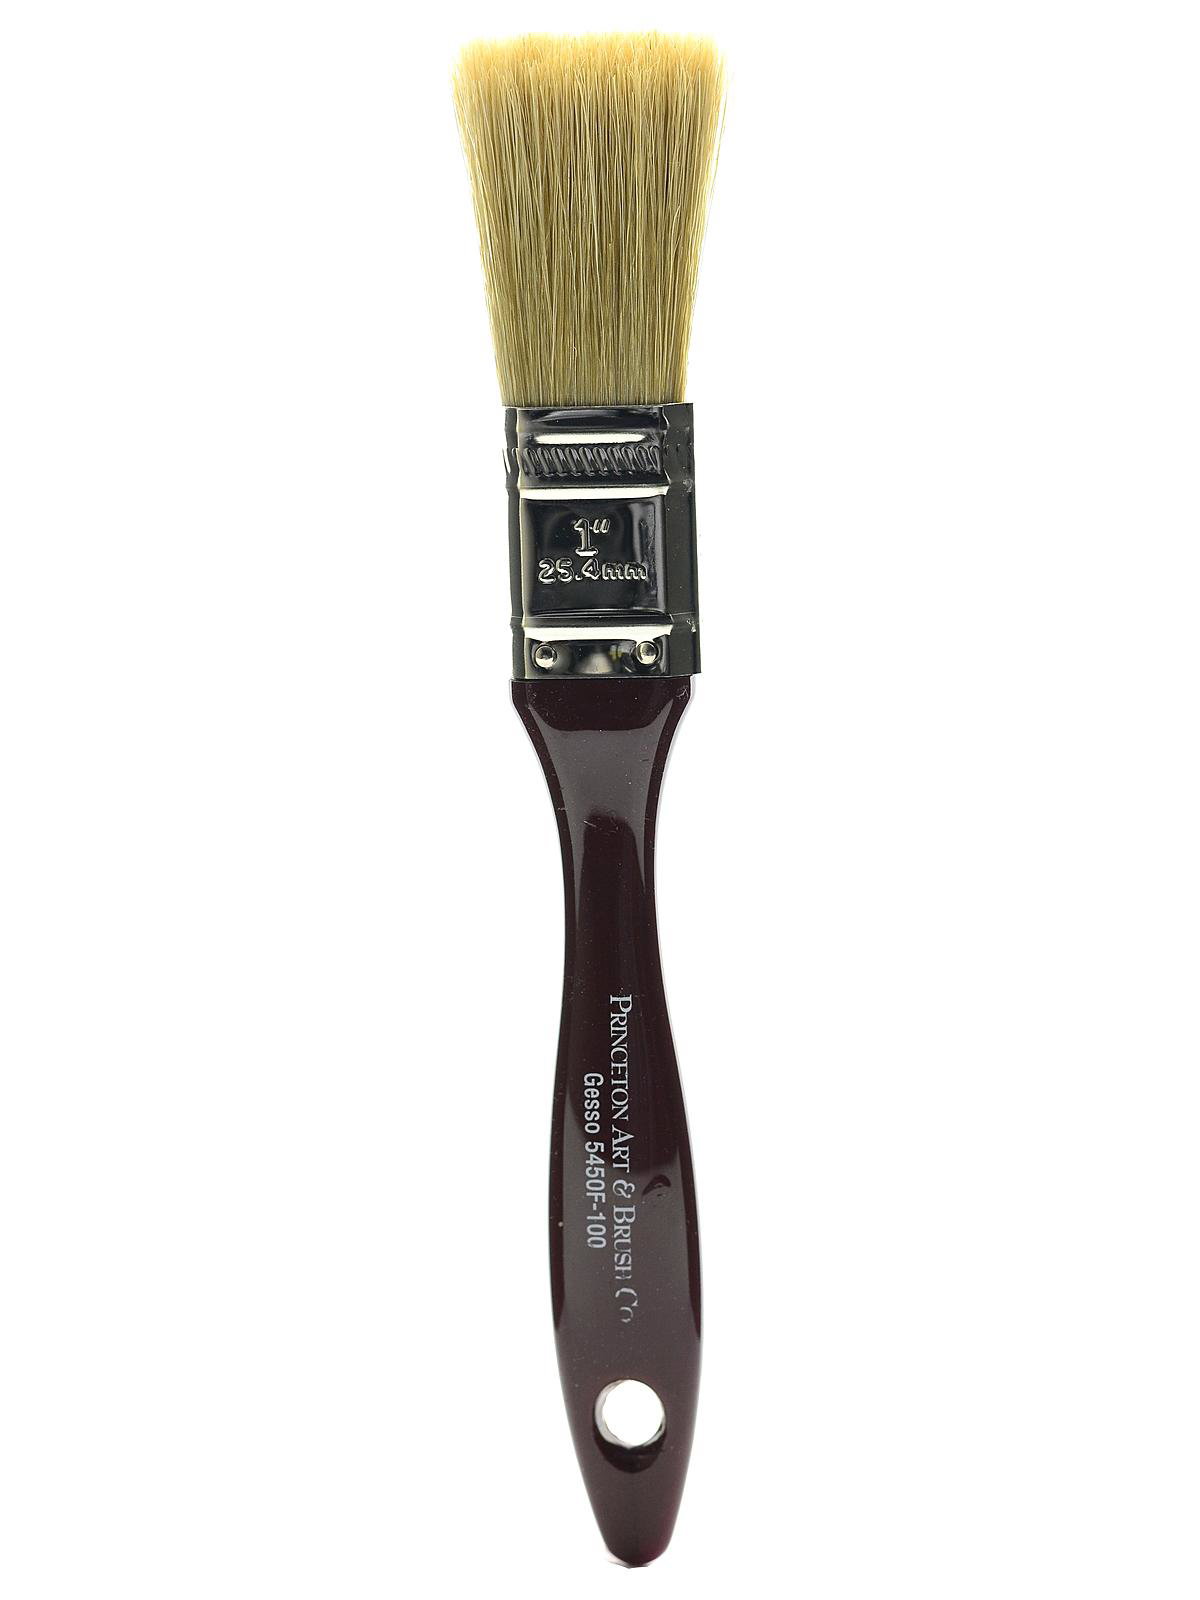 Princeton Brush Hake Brush, 2 inch